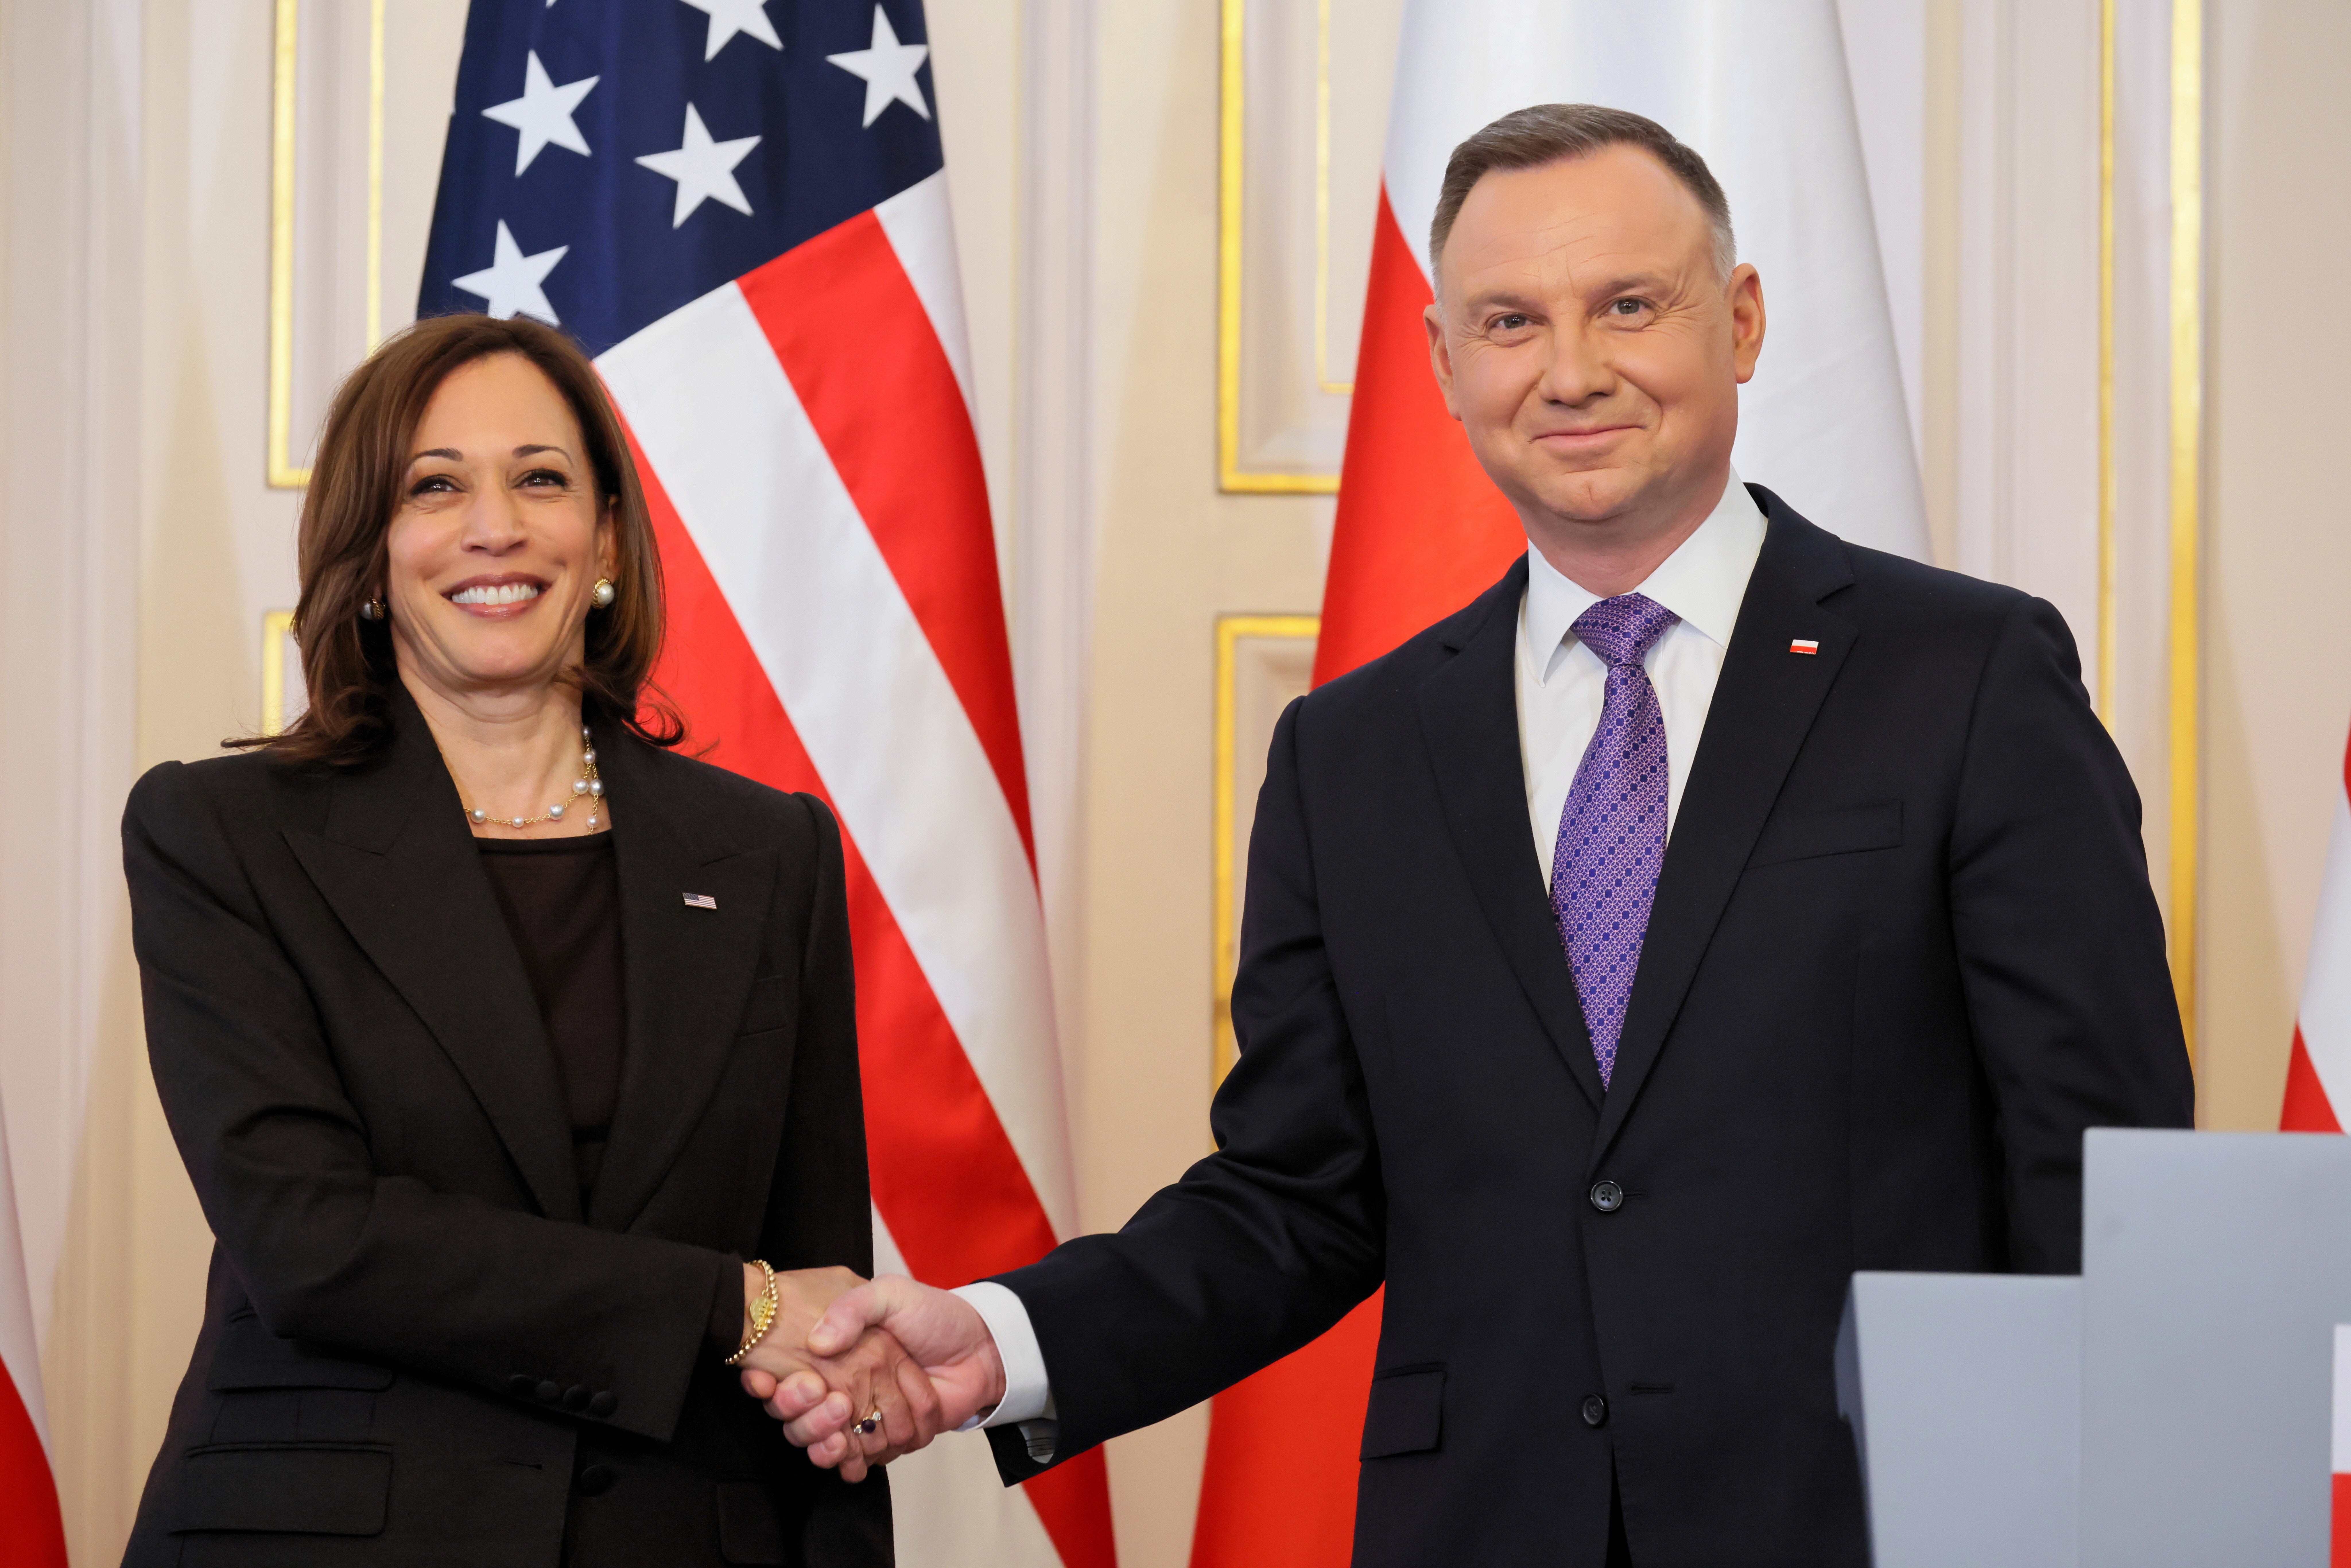 La vicepresidenta Kamala Harris y el presidente polaco Andrzej Duda dan una conferencia de prensa tras su encuentro en el Palacio de Belvedere en Varsovia el 10 de marzo de 2022